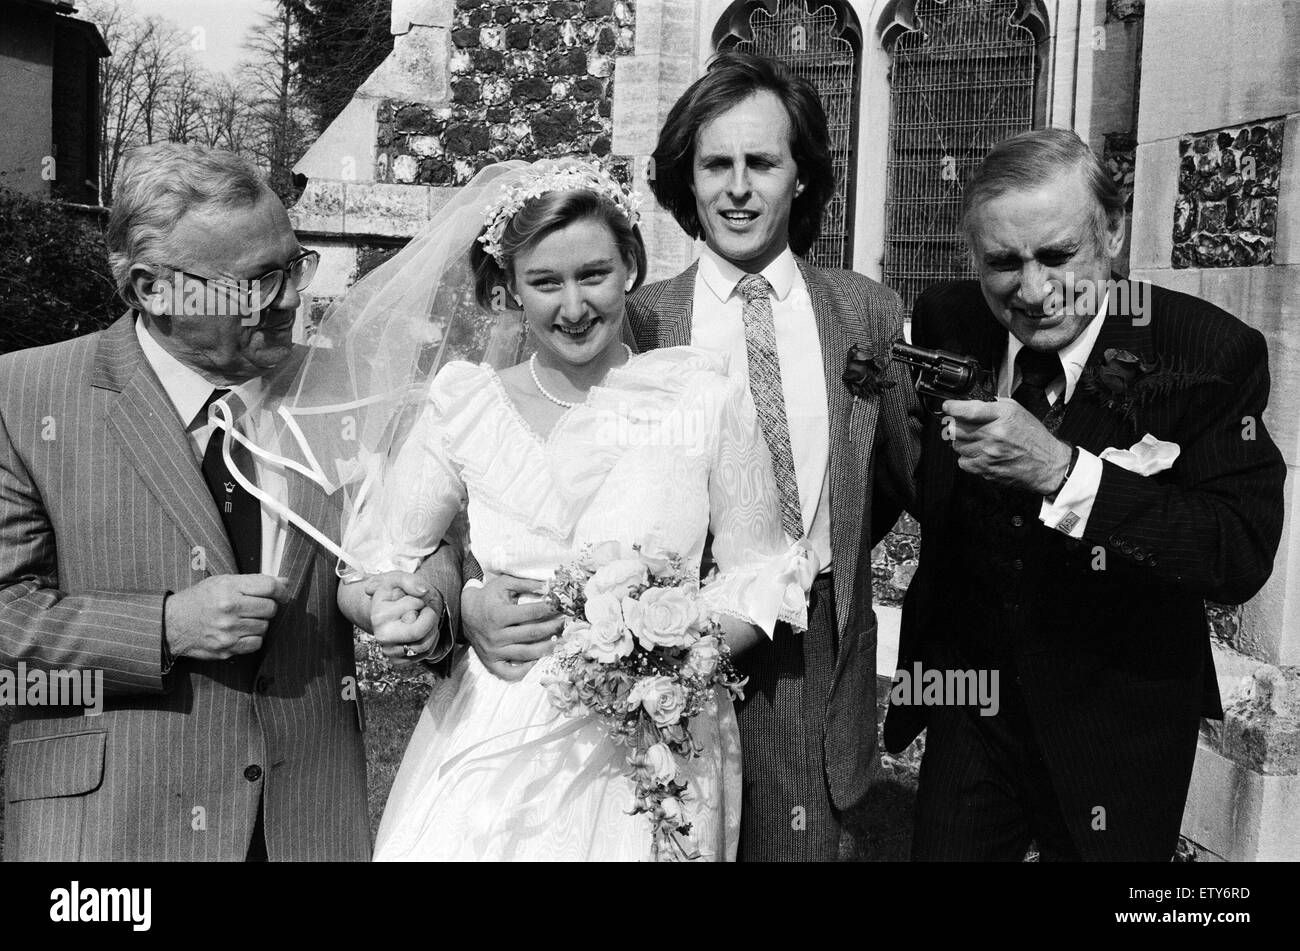 Die Hochzeit von Spike Milligan Tochter Sile, Willie White. Spike Milligan mit einem Scherz mit einer Spielzeug-Pistole, auch abgebildet ist Harry Secombe. Kirche der Jungfrau Maria, Monken Hadley, Barnet, London. 14. April 1984. Stockfoto